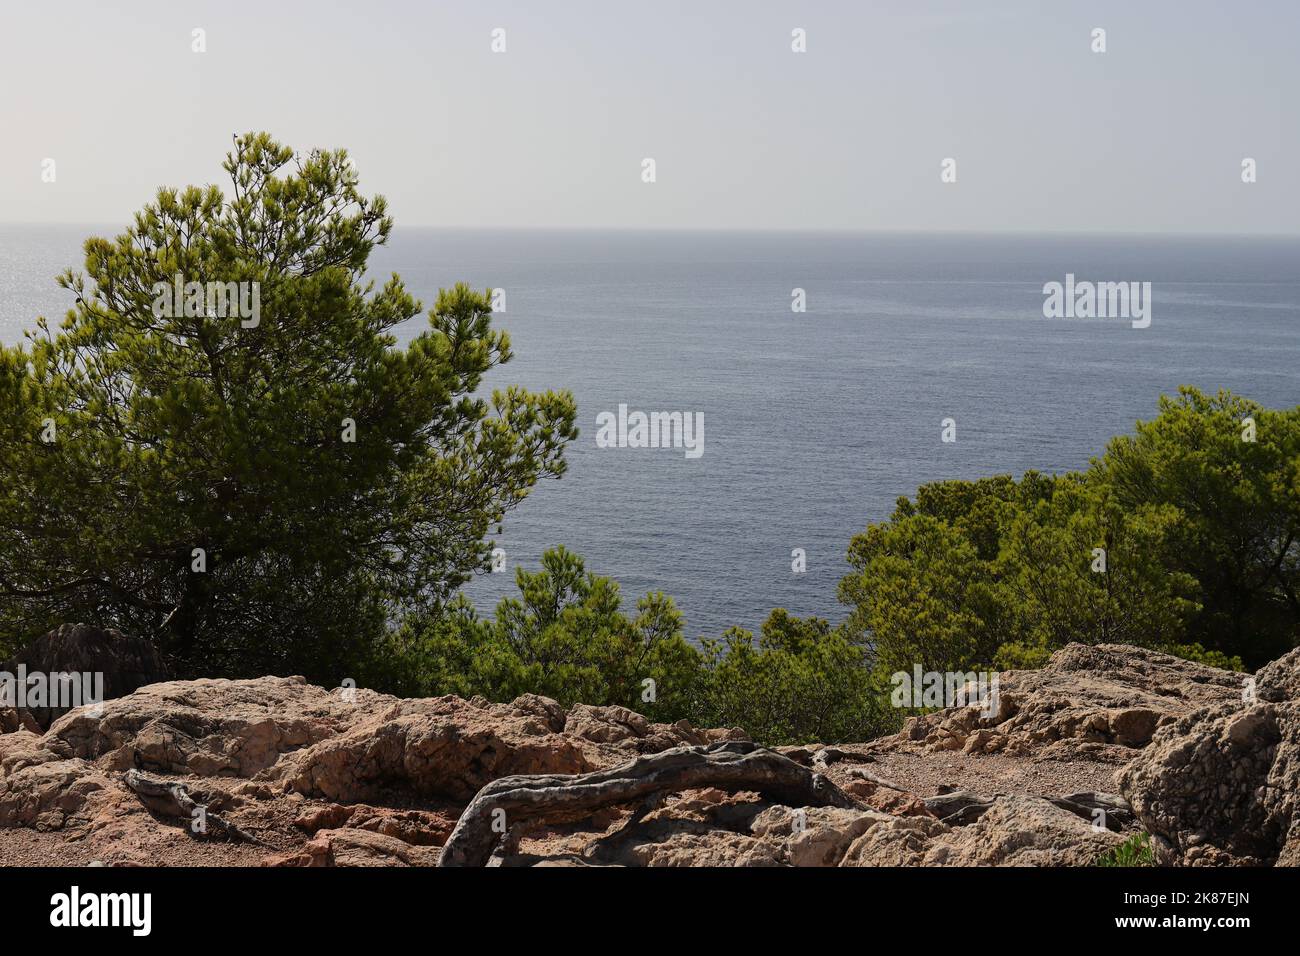 Belle vue d'une colline à la mer Méditerranée à Cala Ratjada, espace copie Banque D'Images